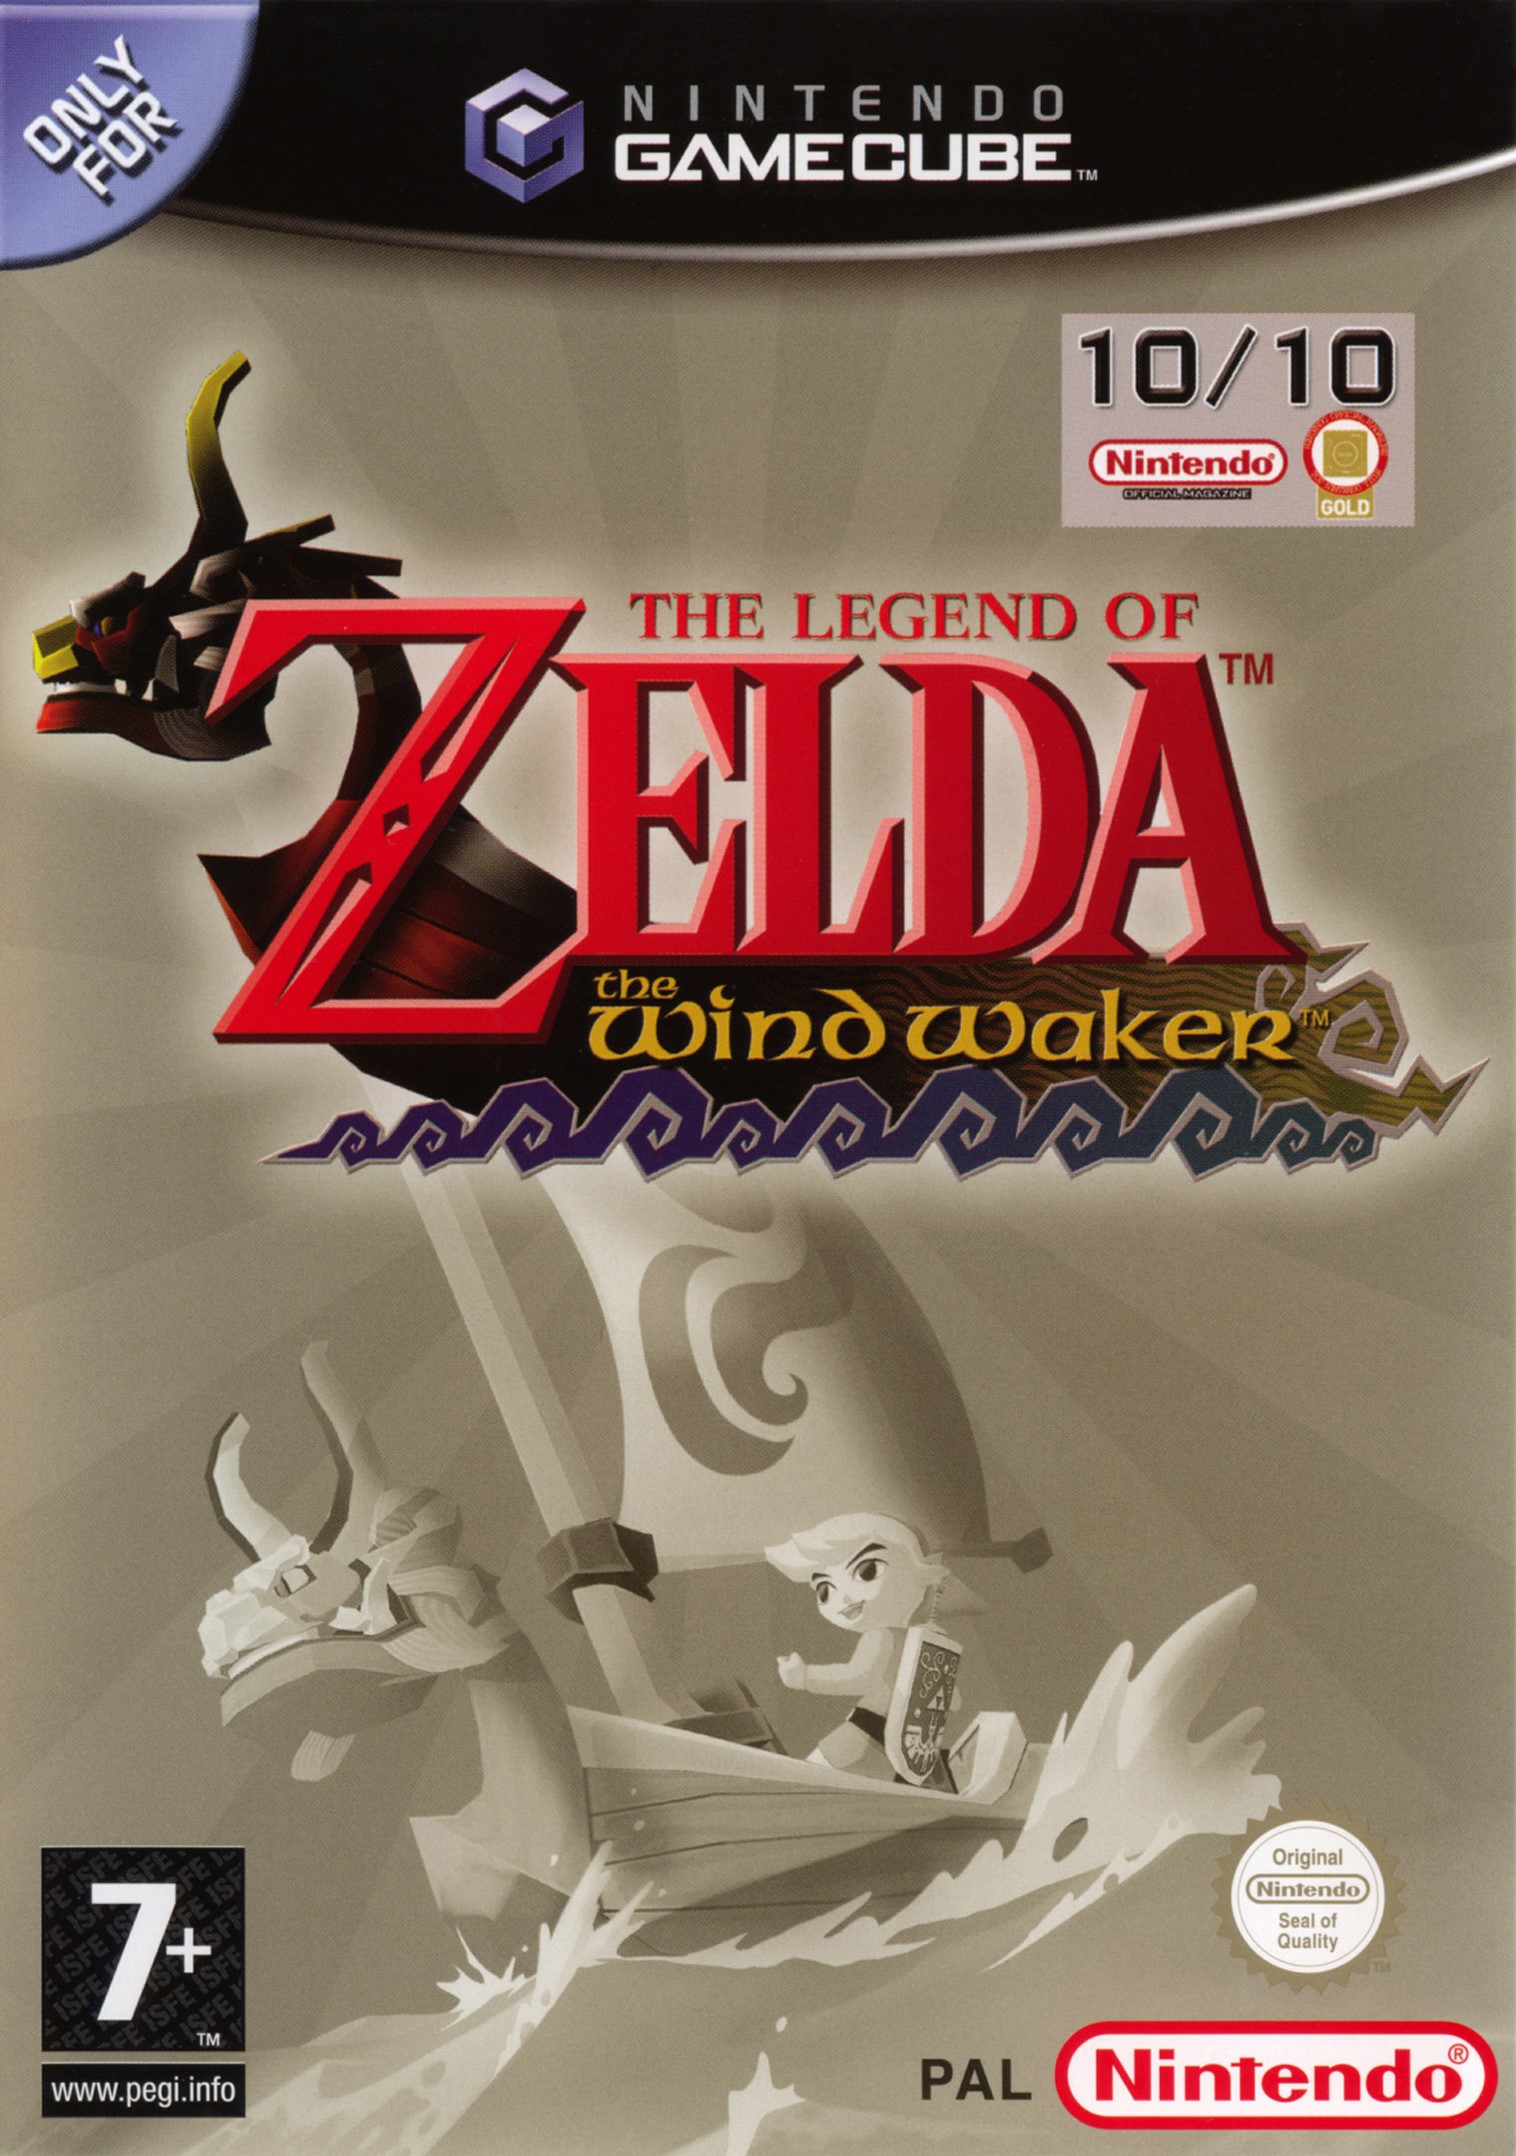 'The Legend of Zelda: The Windwaker'